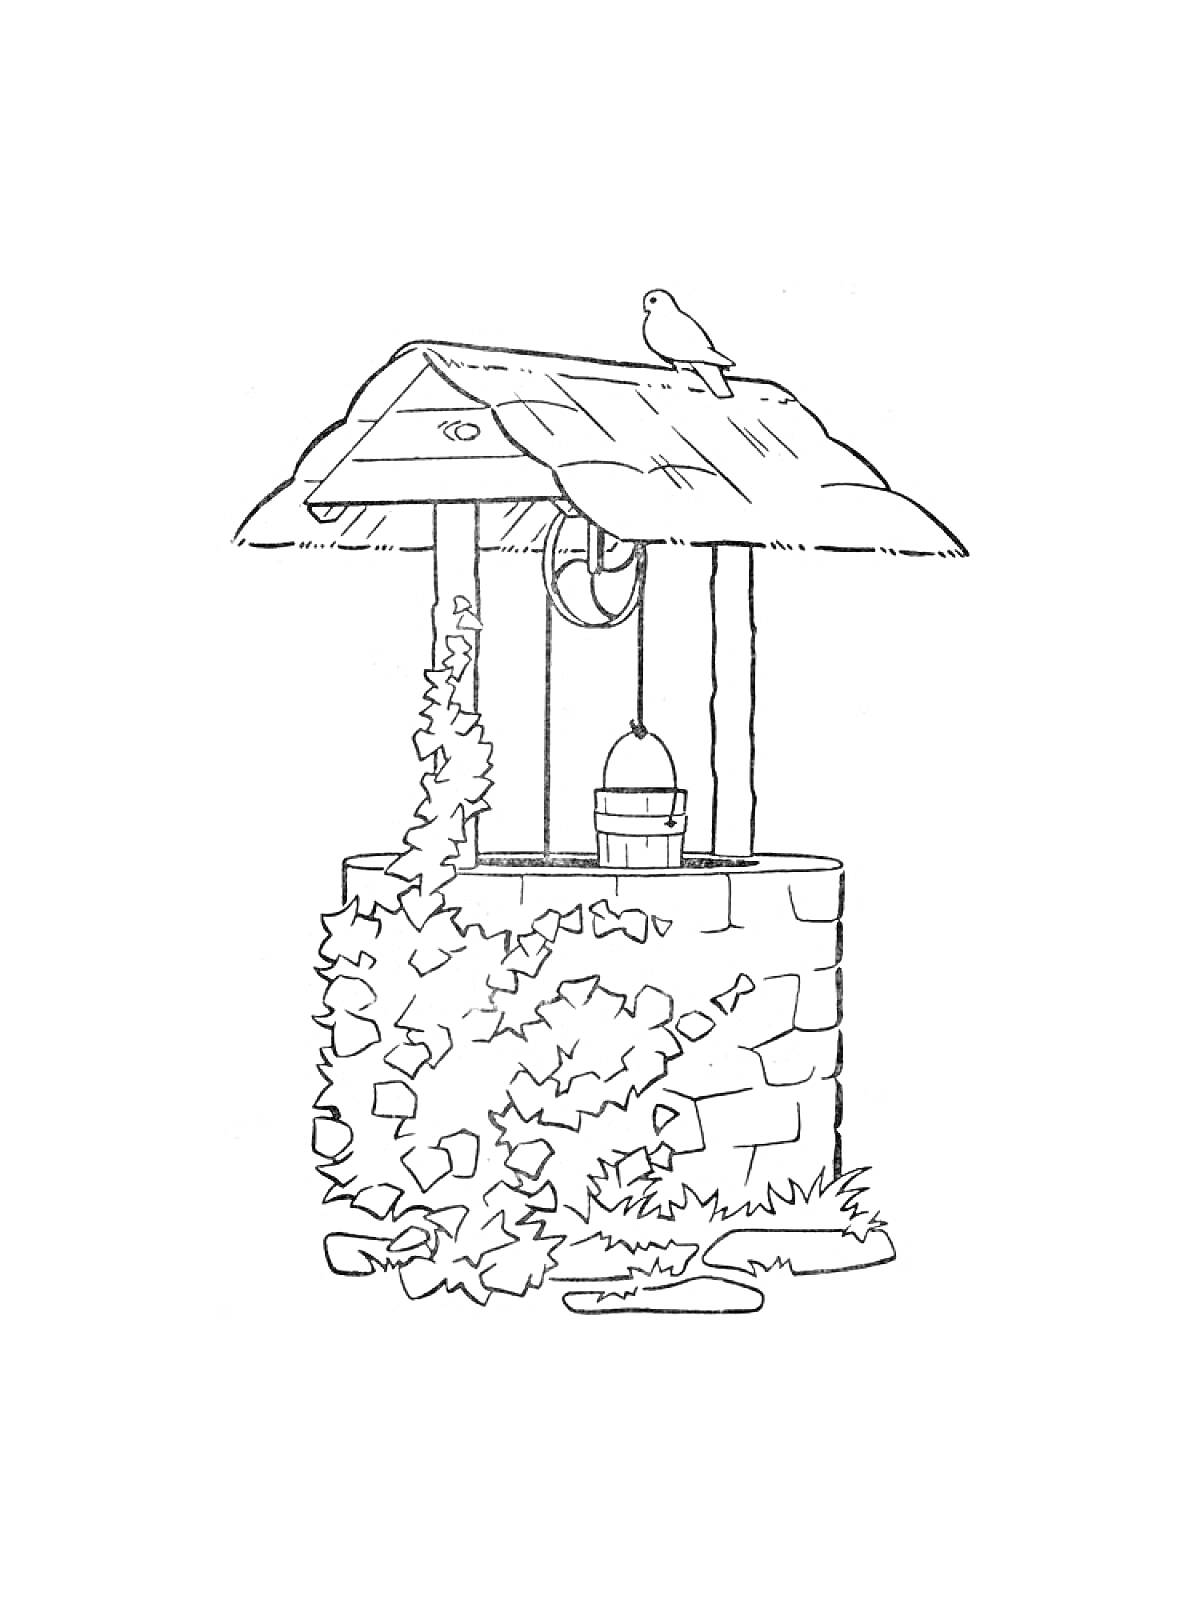 Каменный колодец с крышей, ведром, виноградной лозой и сидящей птицей на крыше